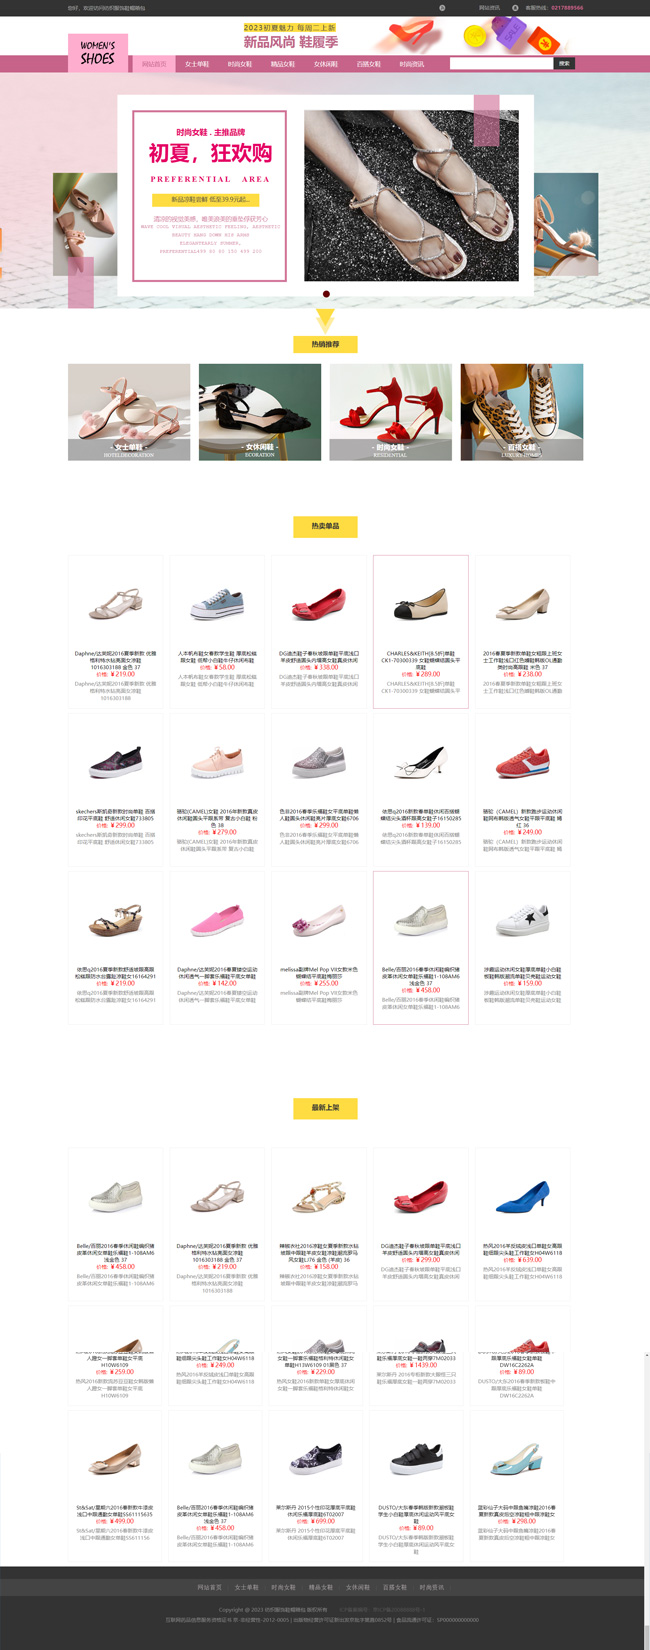 鞋子专卖店纺织服饰鞋帽箱包网站Wordpress模板(带手机站)预览图